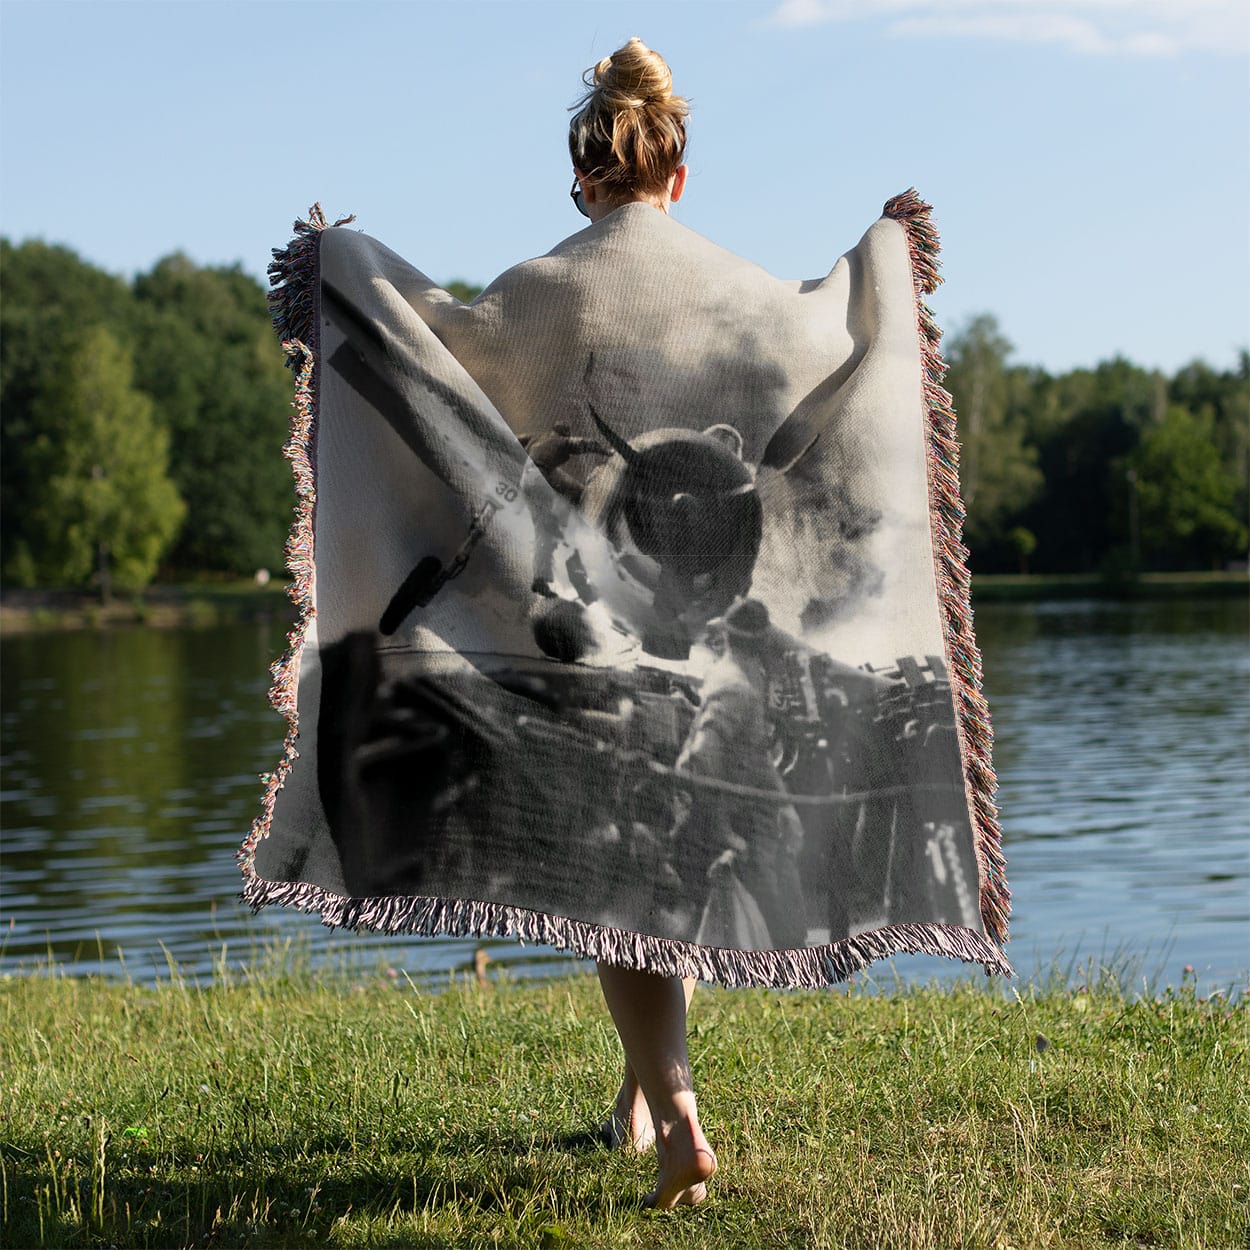 Vintage Plane Crash Photo Woven Blanket Held on a Woman's Back Outside